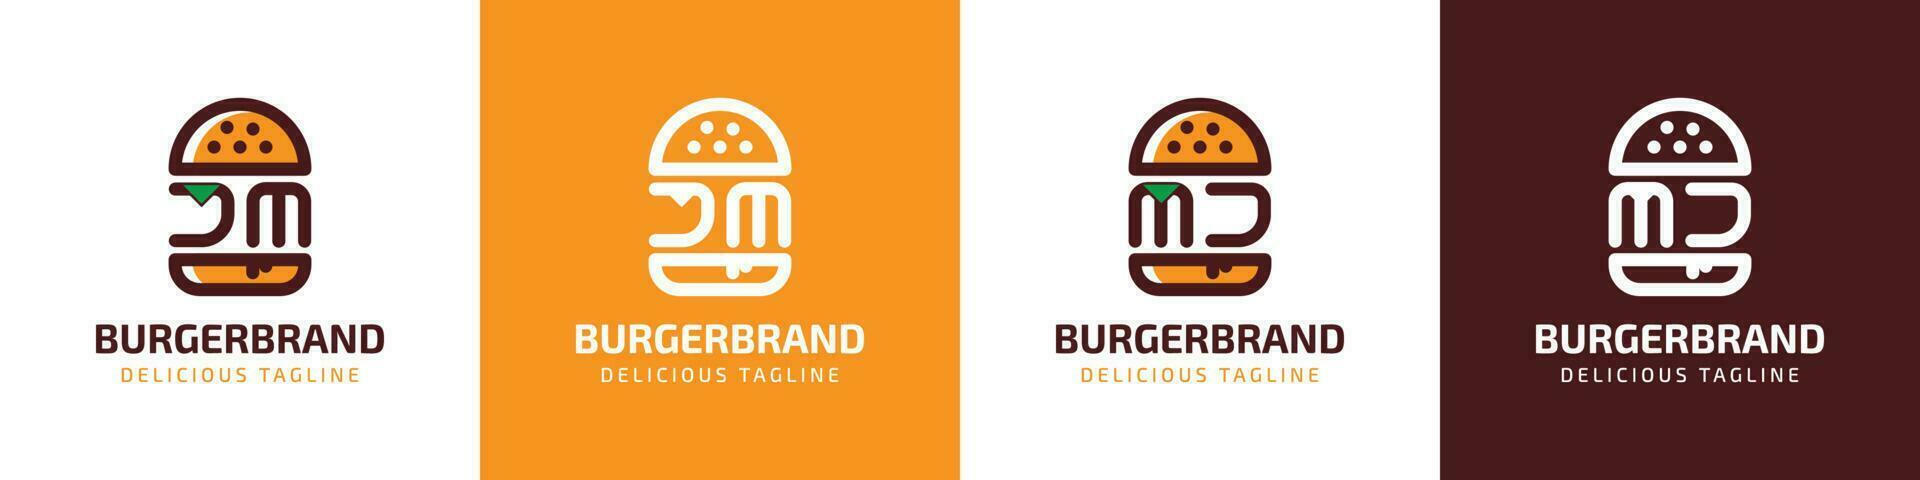 carta jm e mj hamburguer logotipo, adequado para qualquer o negócio relacionado para hamburguer com jm ou mj iniciais. vetor